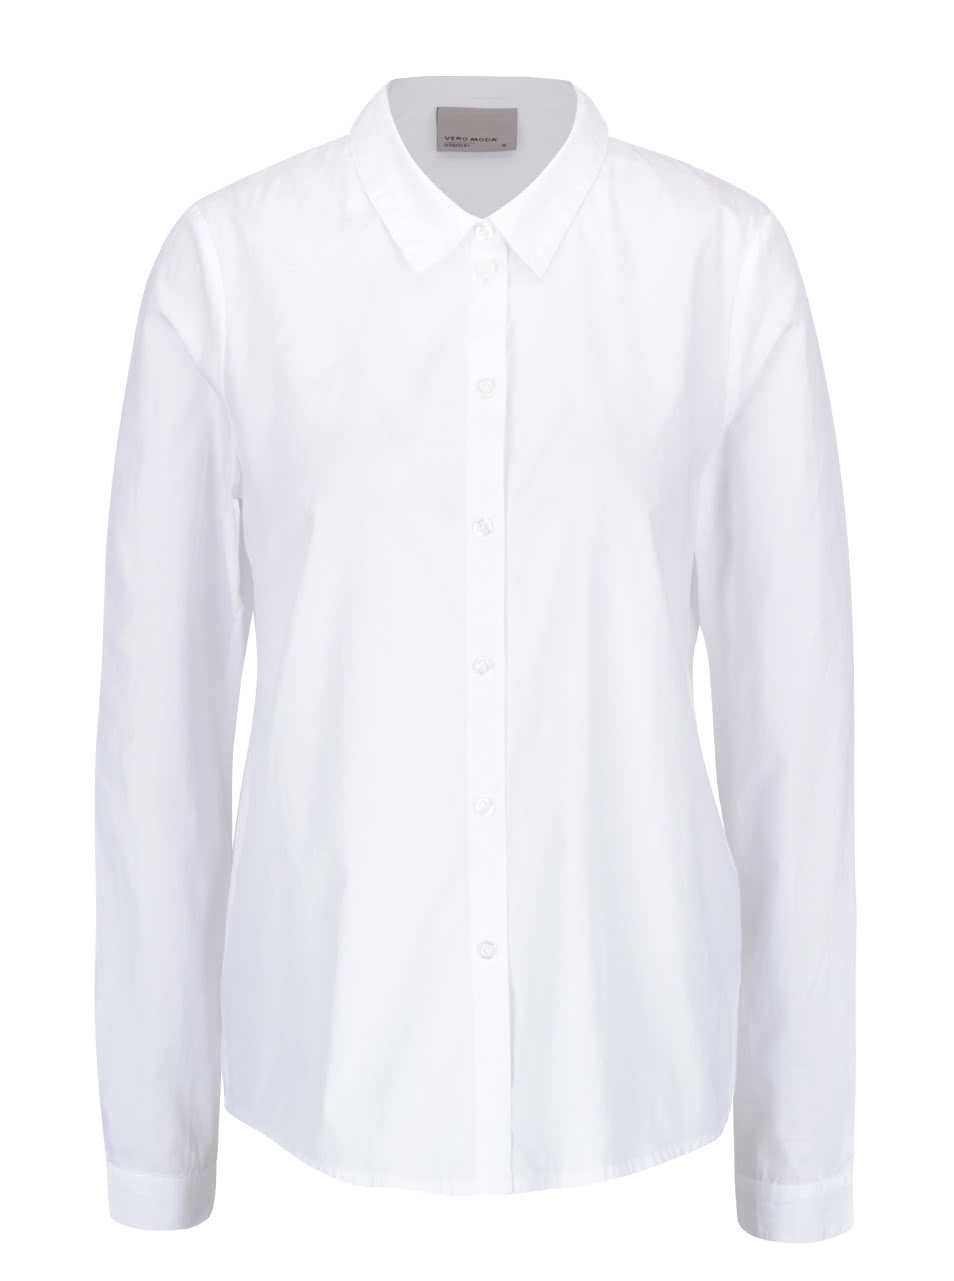 Bílá košile s volánkem na zádech Vero Moda Fraya